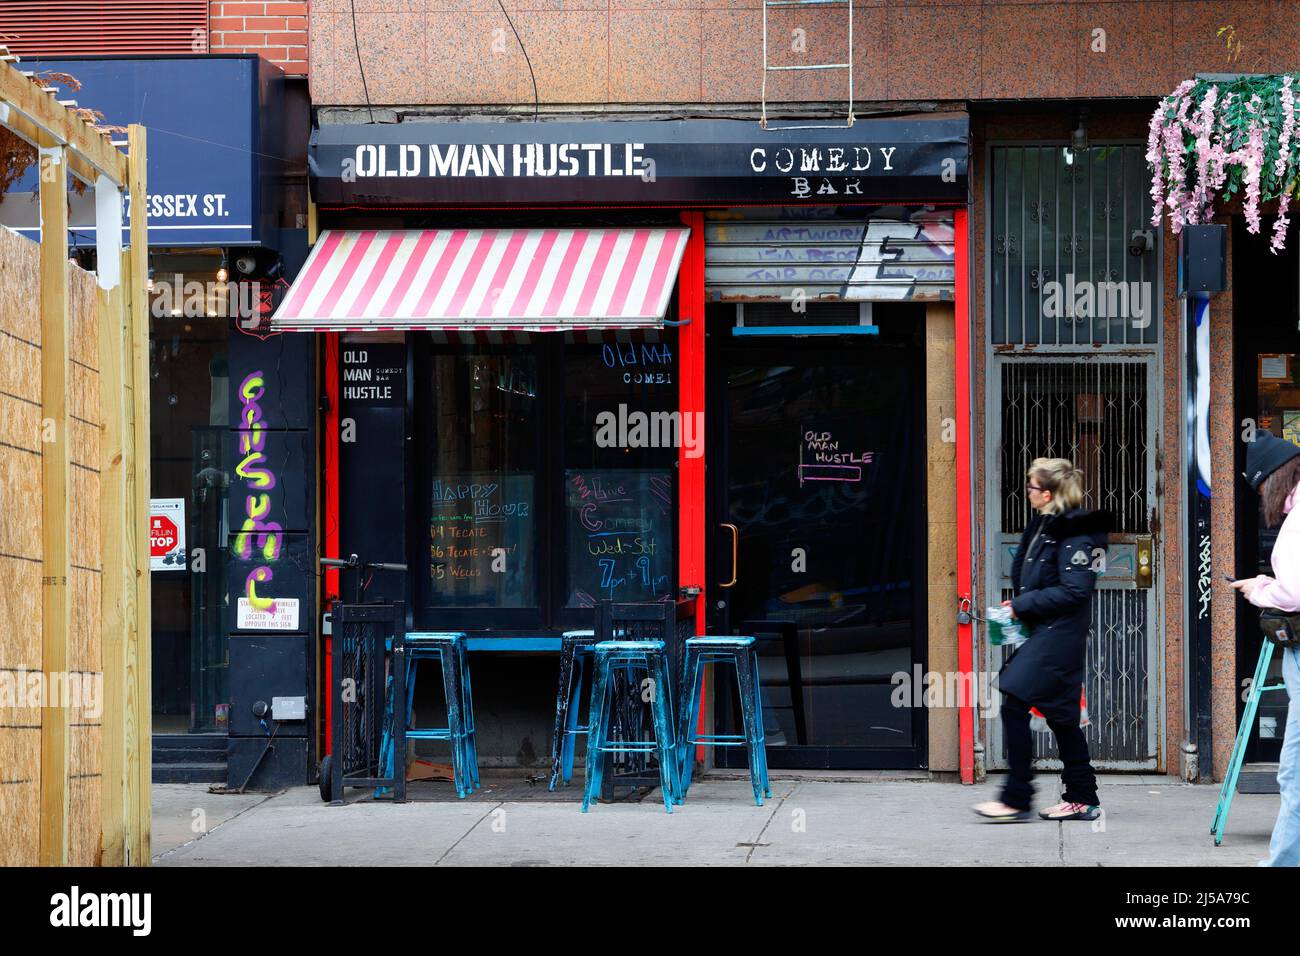 Old Man Hustle, 39 Essex St, Nueva York, NY. Escaparate exterior de un bar y club de comedia en el barrio Lower East Side de Manhattan. Foto de stock